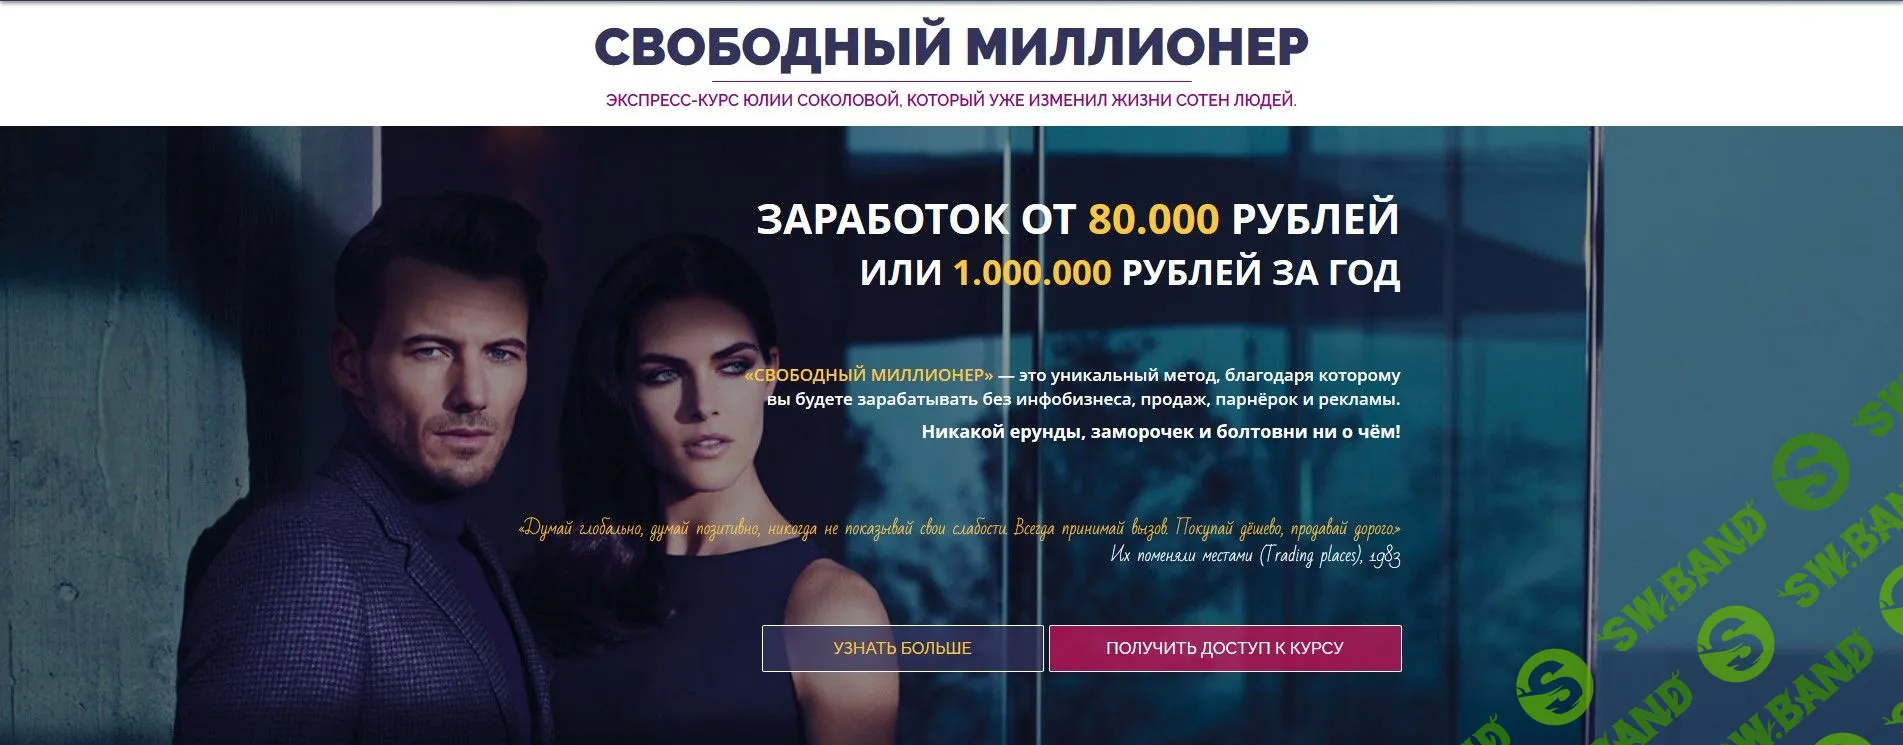 [Юлия Соколова] Свободный миллионер - Заработок от 80.000 рублей или 1.000.000 рублей за год